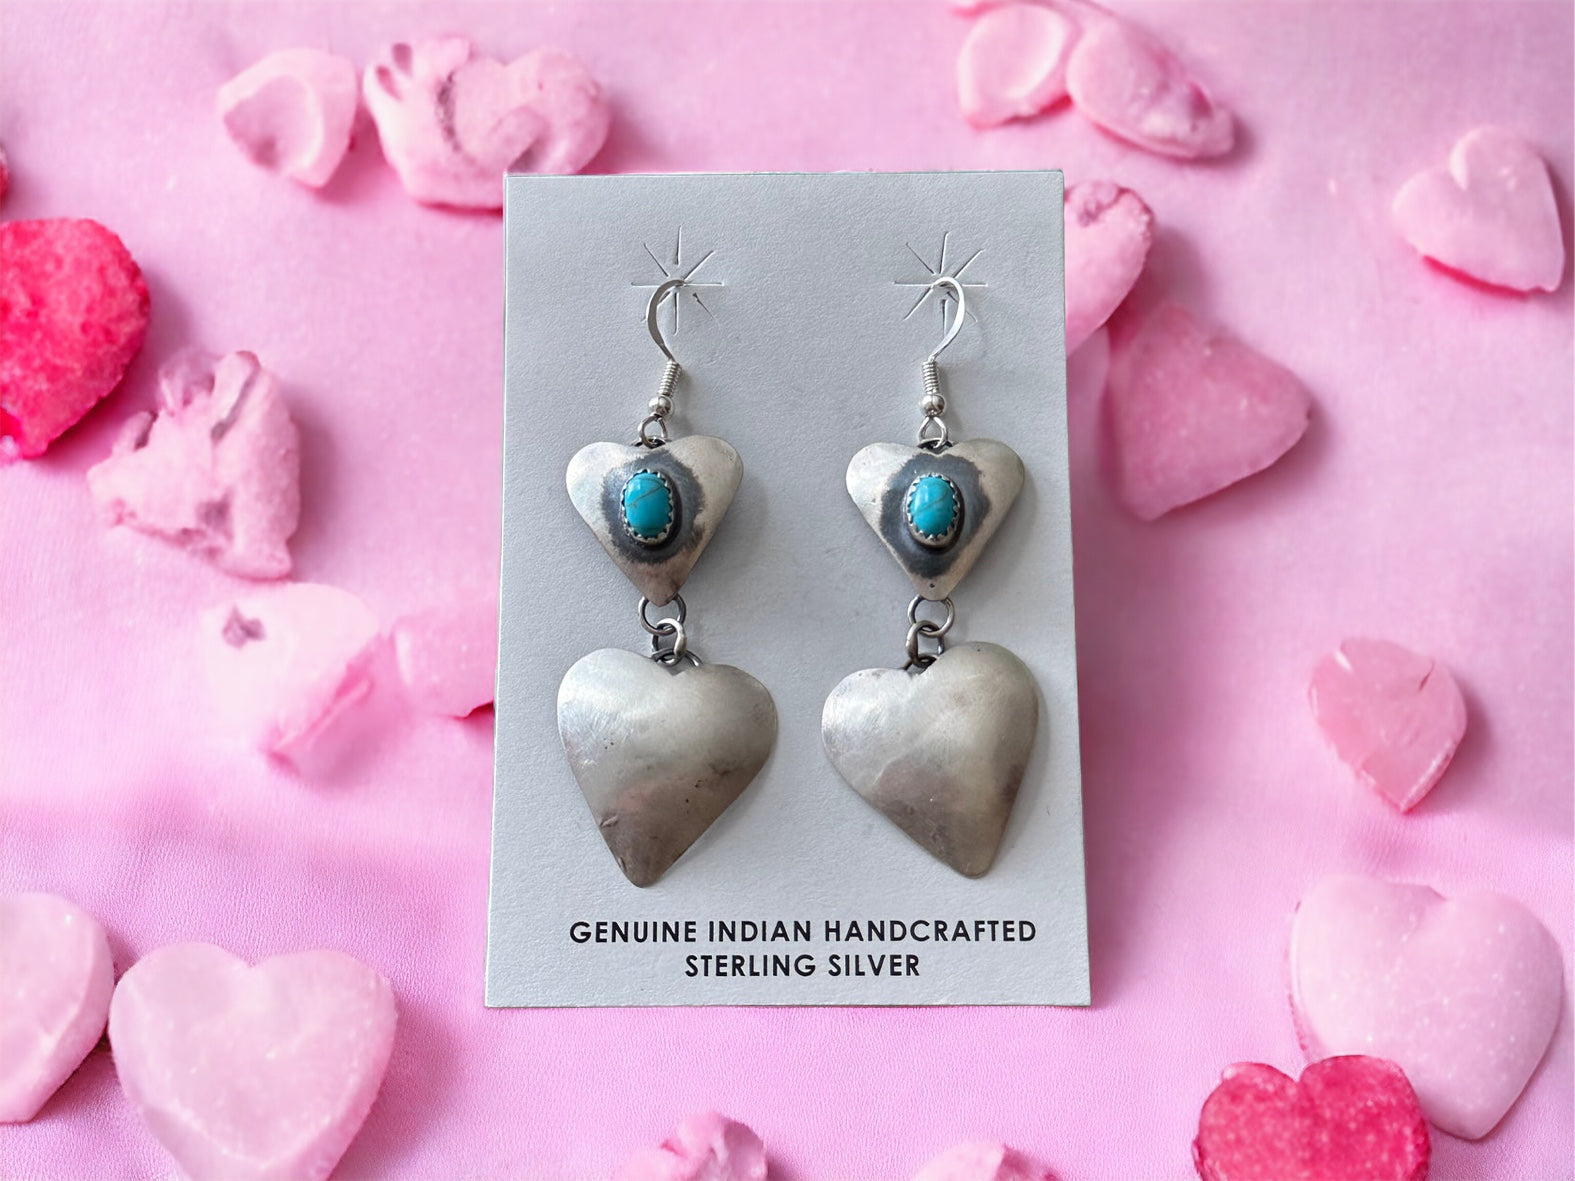 Tim Yazzie Kingman Turquoise & Sterling Silver Heart Dangle Earrings